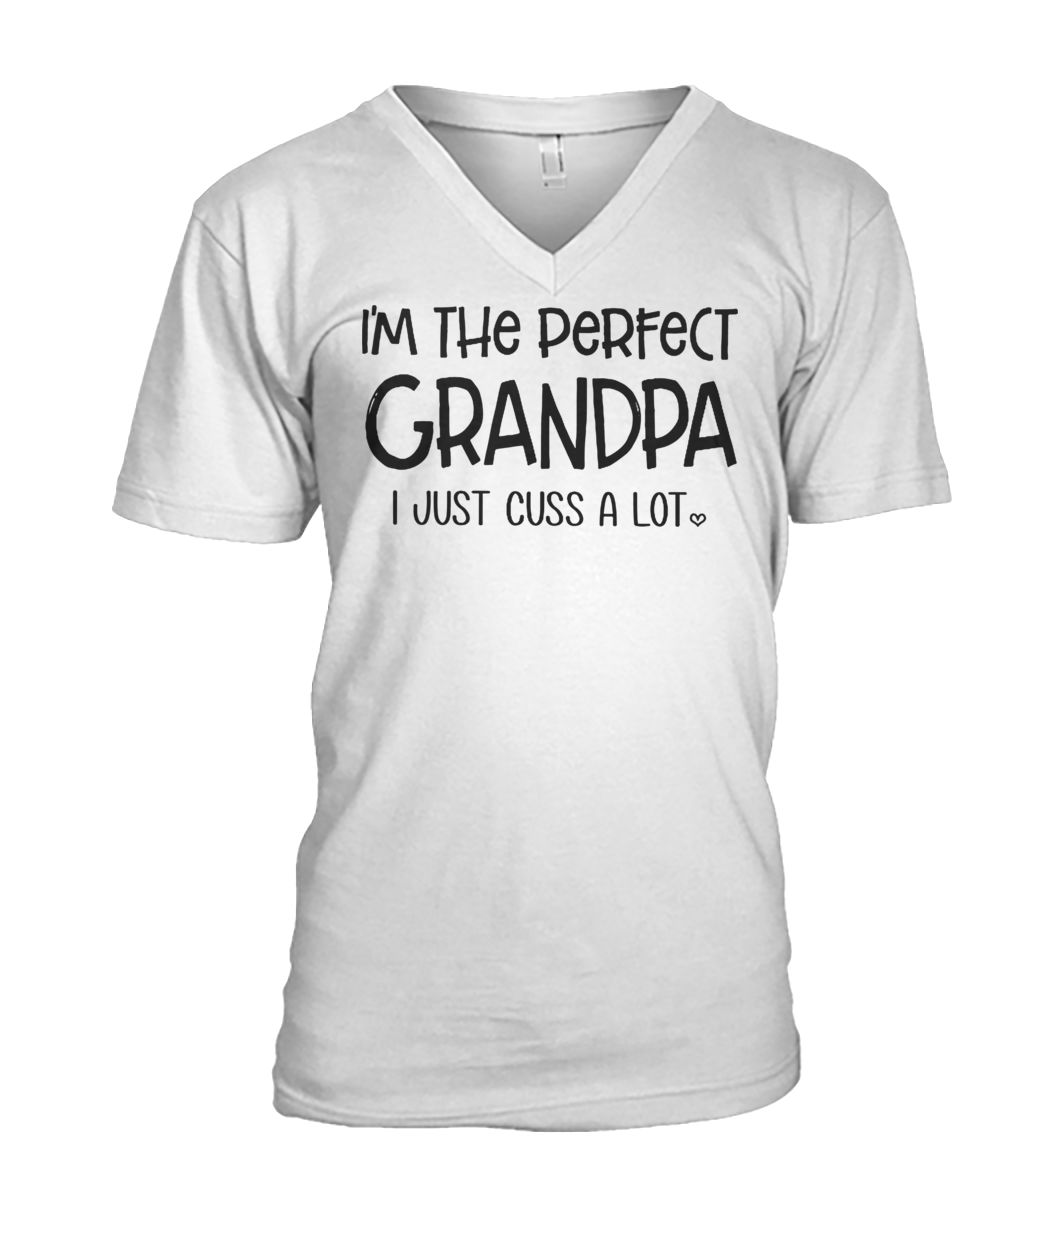 I'm the perfect grandpa I just cuss a lot mens v-neck